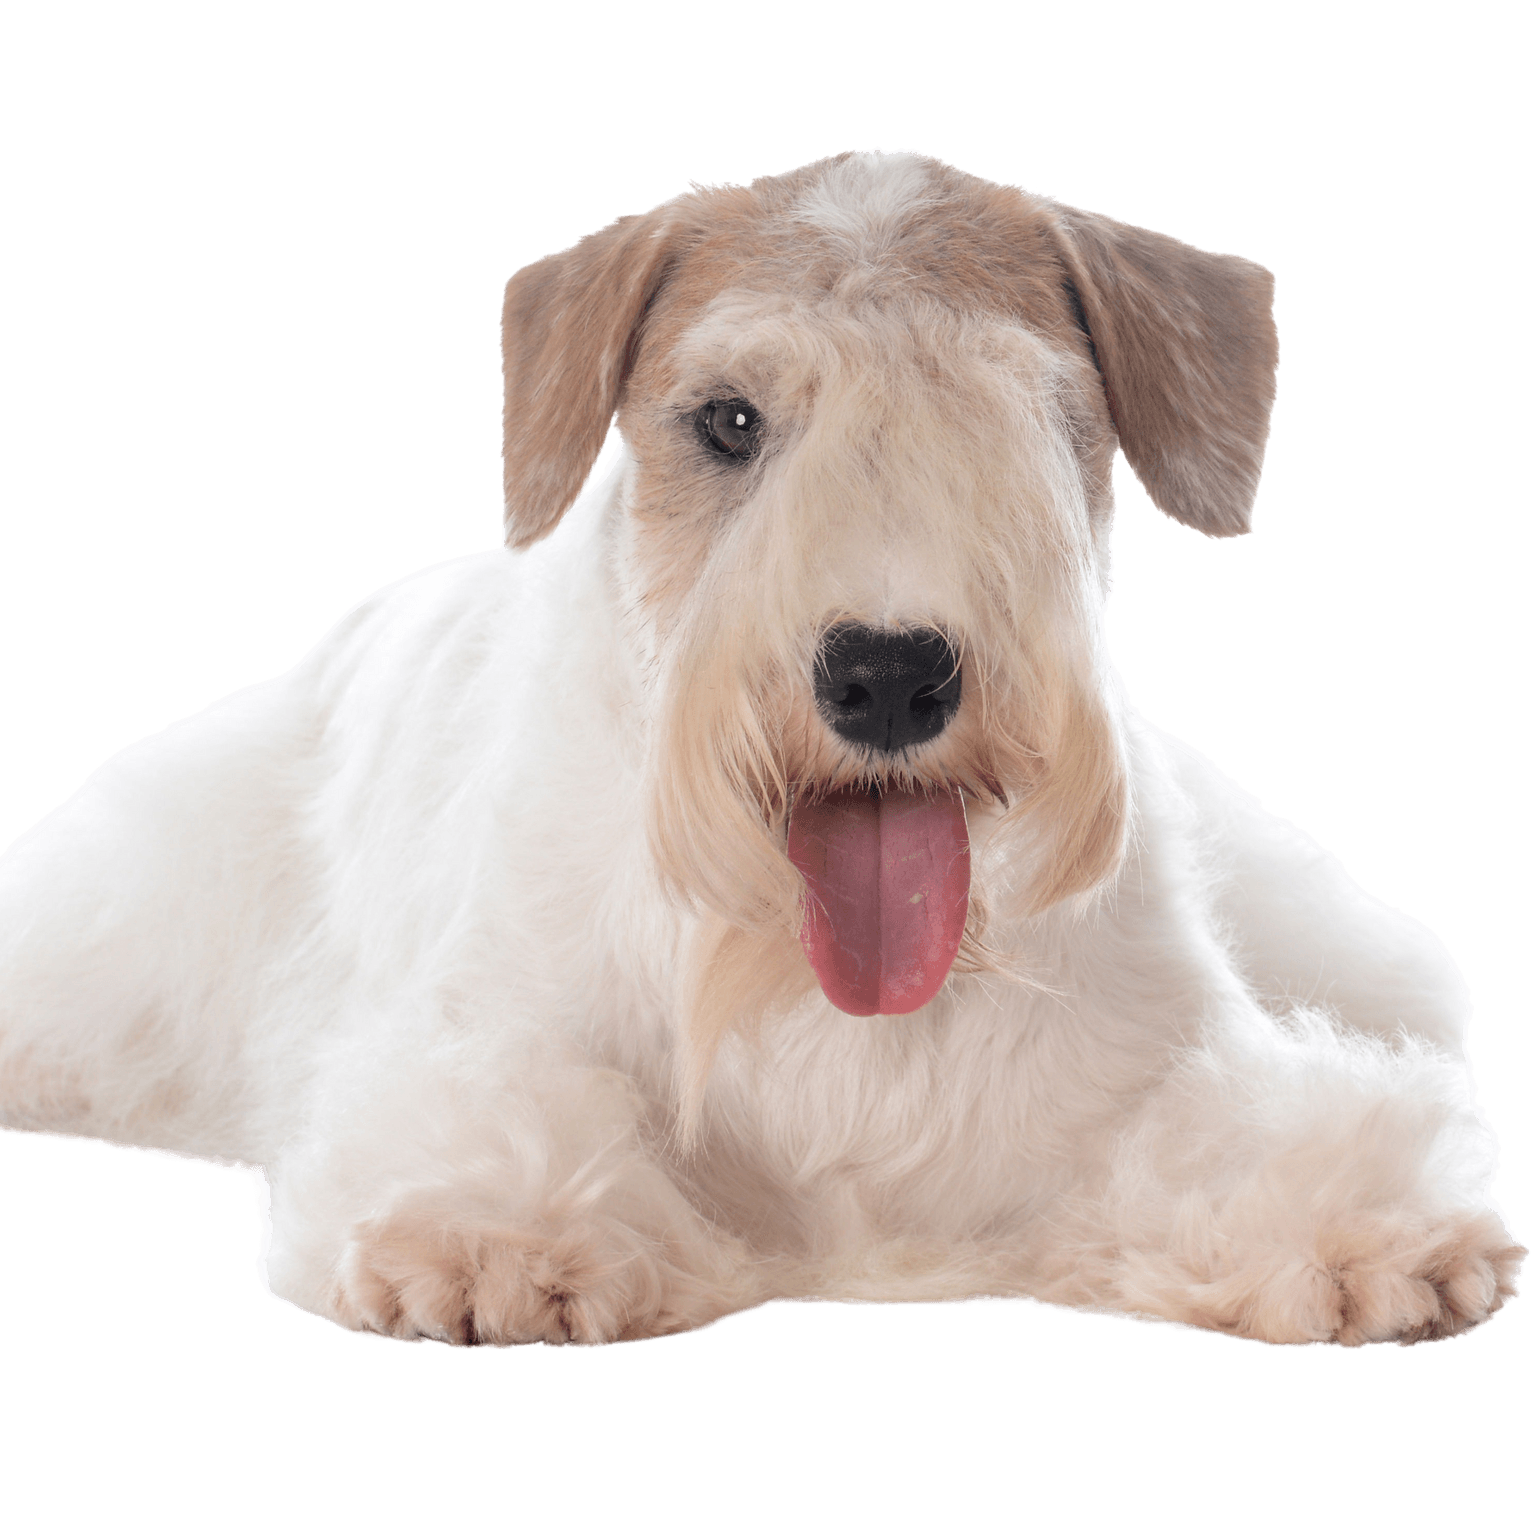 Description de la race Sealyham Terrier, chien de ville, petit chien débutant blanc au pelage ondulé, oreilles en triangle, chien avec beaucoup de poils sur le museau, chien de famille, race de chien du Pays de Galles, race de chien d'Angleterre, race de chien britannique